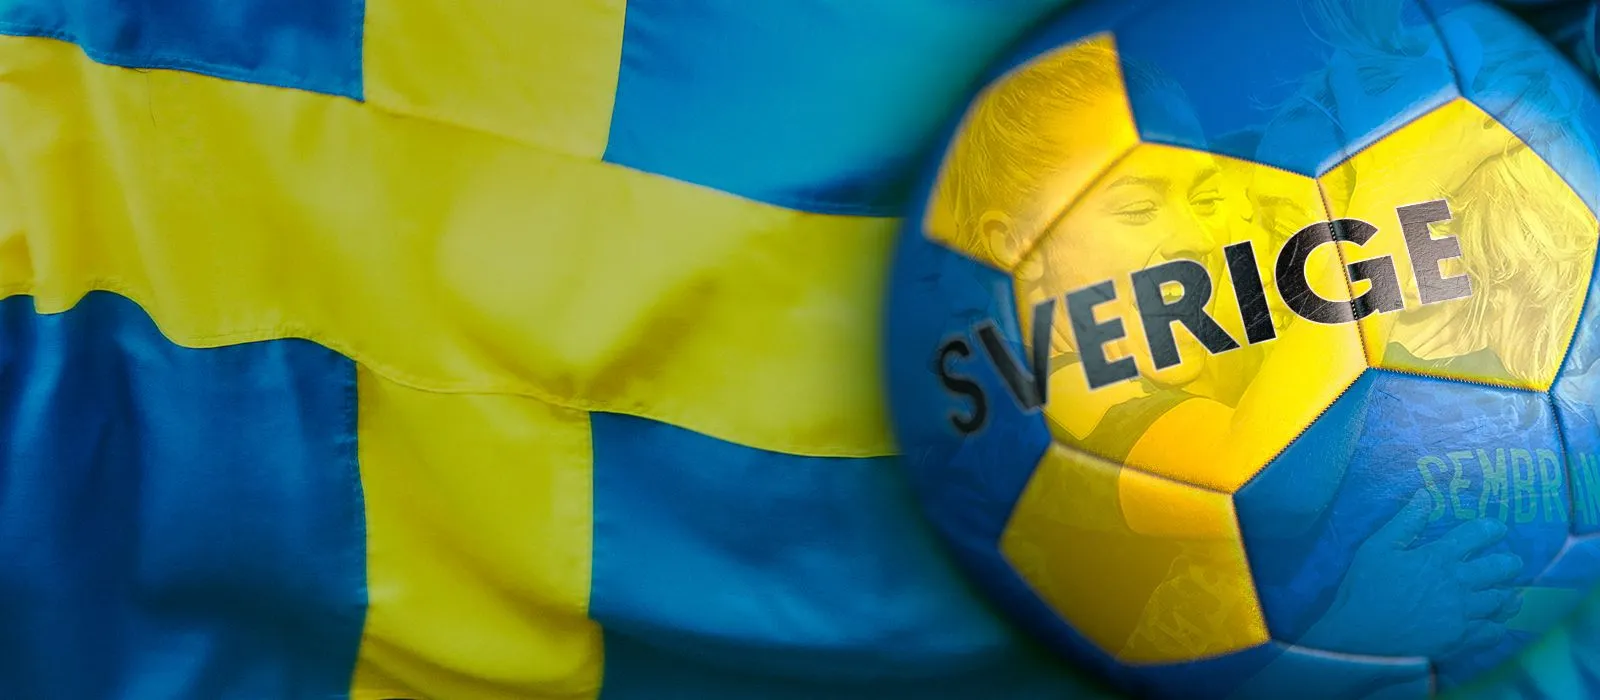 Sverigeflagga bakom fotboll med damlandslagsspelare